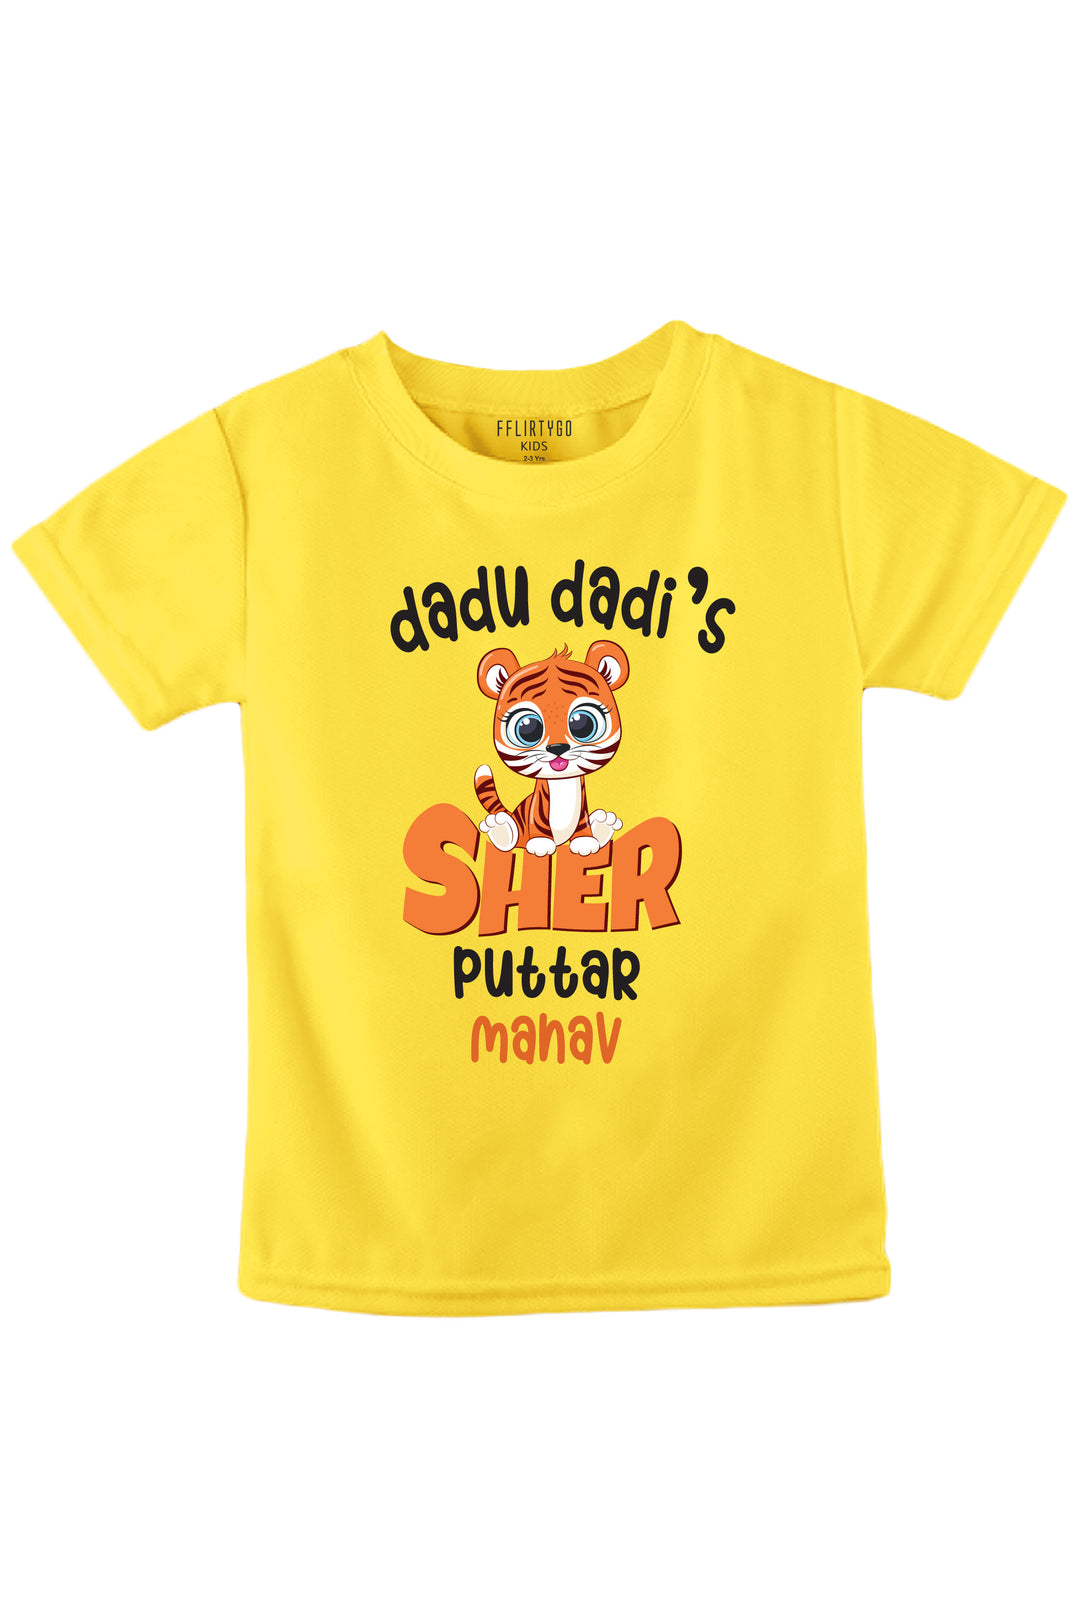 Dadu Dadi's Sher Puttar w/ Custom Name